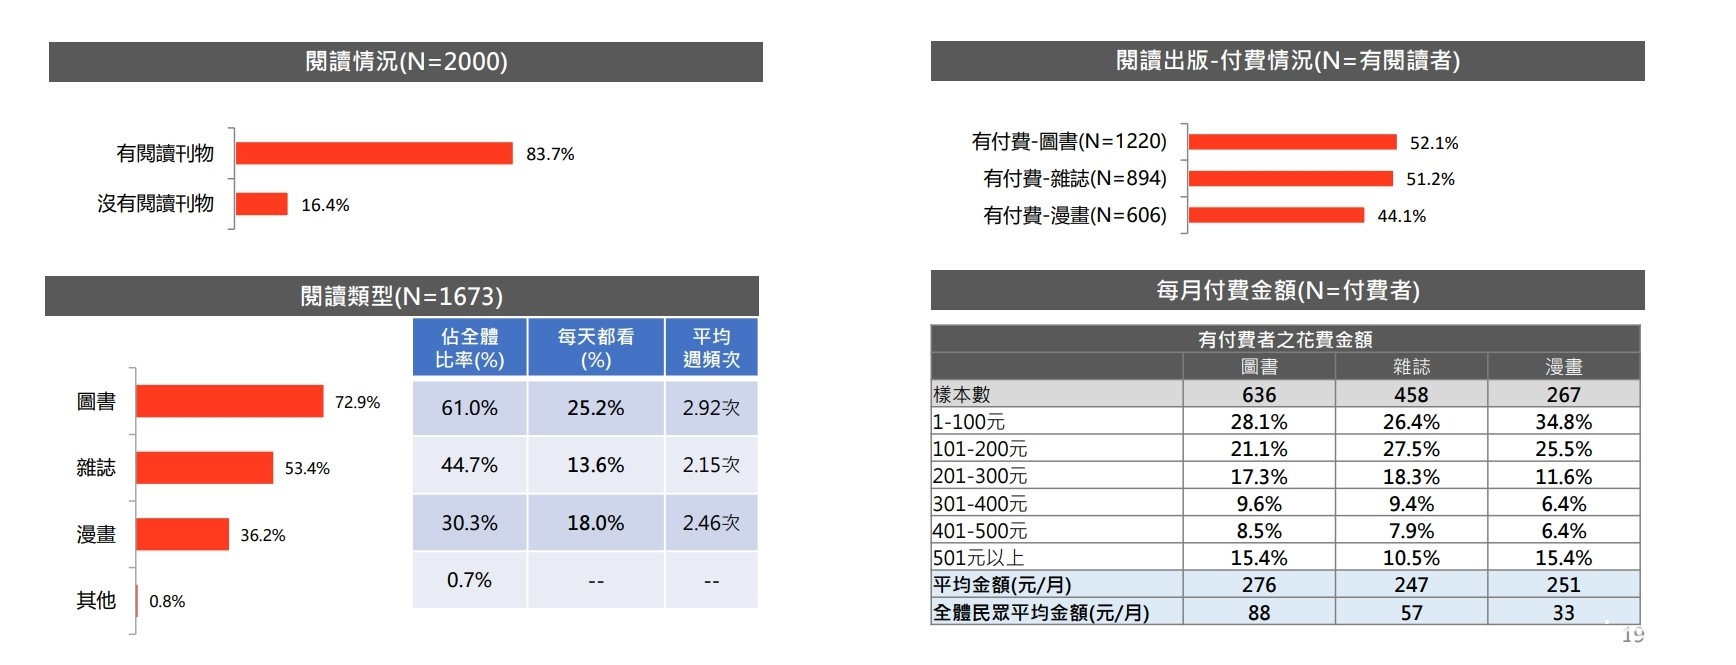 文策院發表文化內容消費趨勢調查 台灣手遊玩家人數眾多、付費比率 26.6%